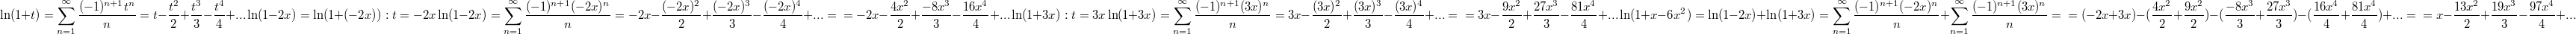 $$\ln(1+t)=\sum_{n = 1}^{\infty}\frac {(-1)^{n+1}t^n} {n}=t-\frac {t^2} {2}+\frac {t^3} {3}-\frac {t^4} {4}+...\\ \ln(1-2x)=\ln(1+(-2x)):\\ t=-2x\\ \ln(1-2x)=\sum_{n = 1}^{\infty}\frac {(-1)^{n+1}(-2x)^n} {n}=-2x-\frac {(-2x)^2} {2}+\frac {(-2x)^3} {3}-\frac {(-2x)^4} {4}+...=\\=-2x-\frac {4x^2} {2}+\frac {-8x^3} {3}-\frac {16x^4} {4}+...\\ \ln(1+3x):\\ t=3x\\ \ln(1+3x)=\sum_{n = 1}^{\infty}\frac {(-1)^{n+1}(3x)^n} {n}=3x-\frac {(3x)^2} {2}+\frac {(3x)^3} {3}-\frac {(3x)^4} {4}+...=\\=3x-\frac {9x^2} {2}+\frac {27x^3} {3}-\frac {81x^4} {4}+...\\ \ln(1+x-6x^2)=\ln(1-2x)+\ln(1+3x)=\sum_{n = 1}^{\infty}\frac {(-1)^{n+1}(-2x)^n} {n}+\sum_{n = 1}^{\infty}\frac {(-1)^{n+1}(3x)^n} {n}=\\= (-2x+3x)-(\frac {4x^2} {2}+\frac {9x^2} {2})-(\frac {-8x^3} {3}+\frac {27x^3} {3})-(\frac {16x^4} {4}+\frac {81x^4} {4})+...=\\= x-\frac {13x^2} {2}+\frac {19x^3} {3}-\frac {97x^4} {4}+... $$